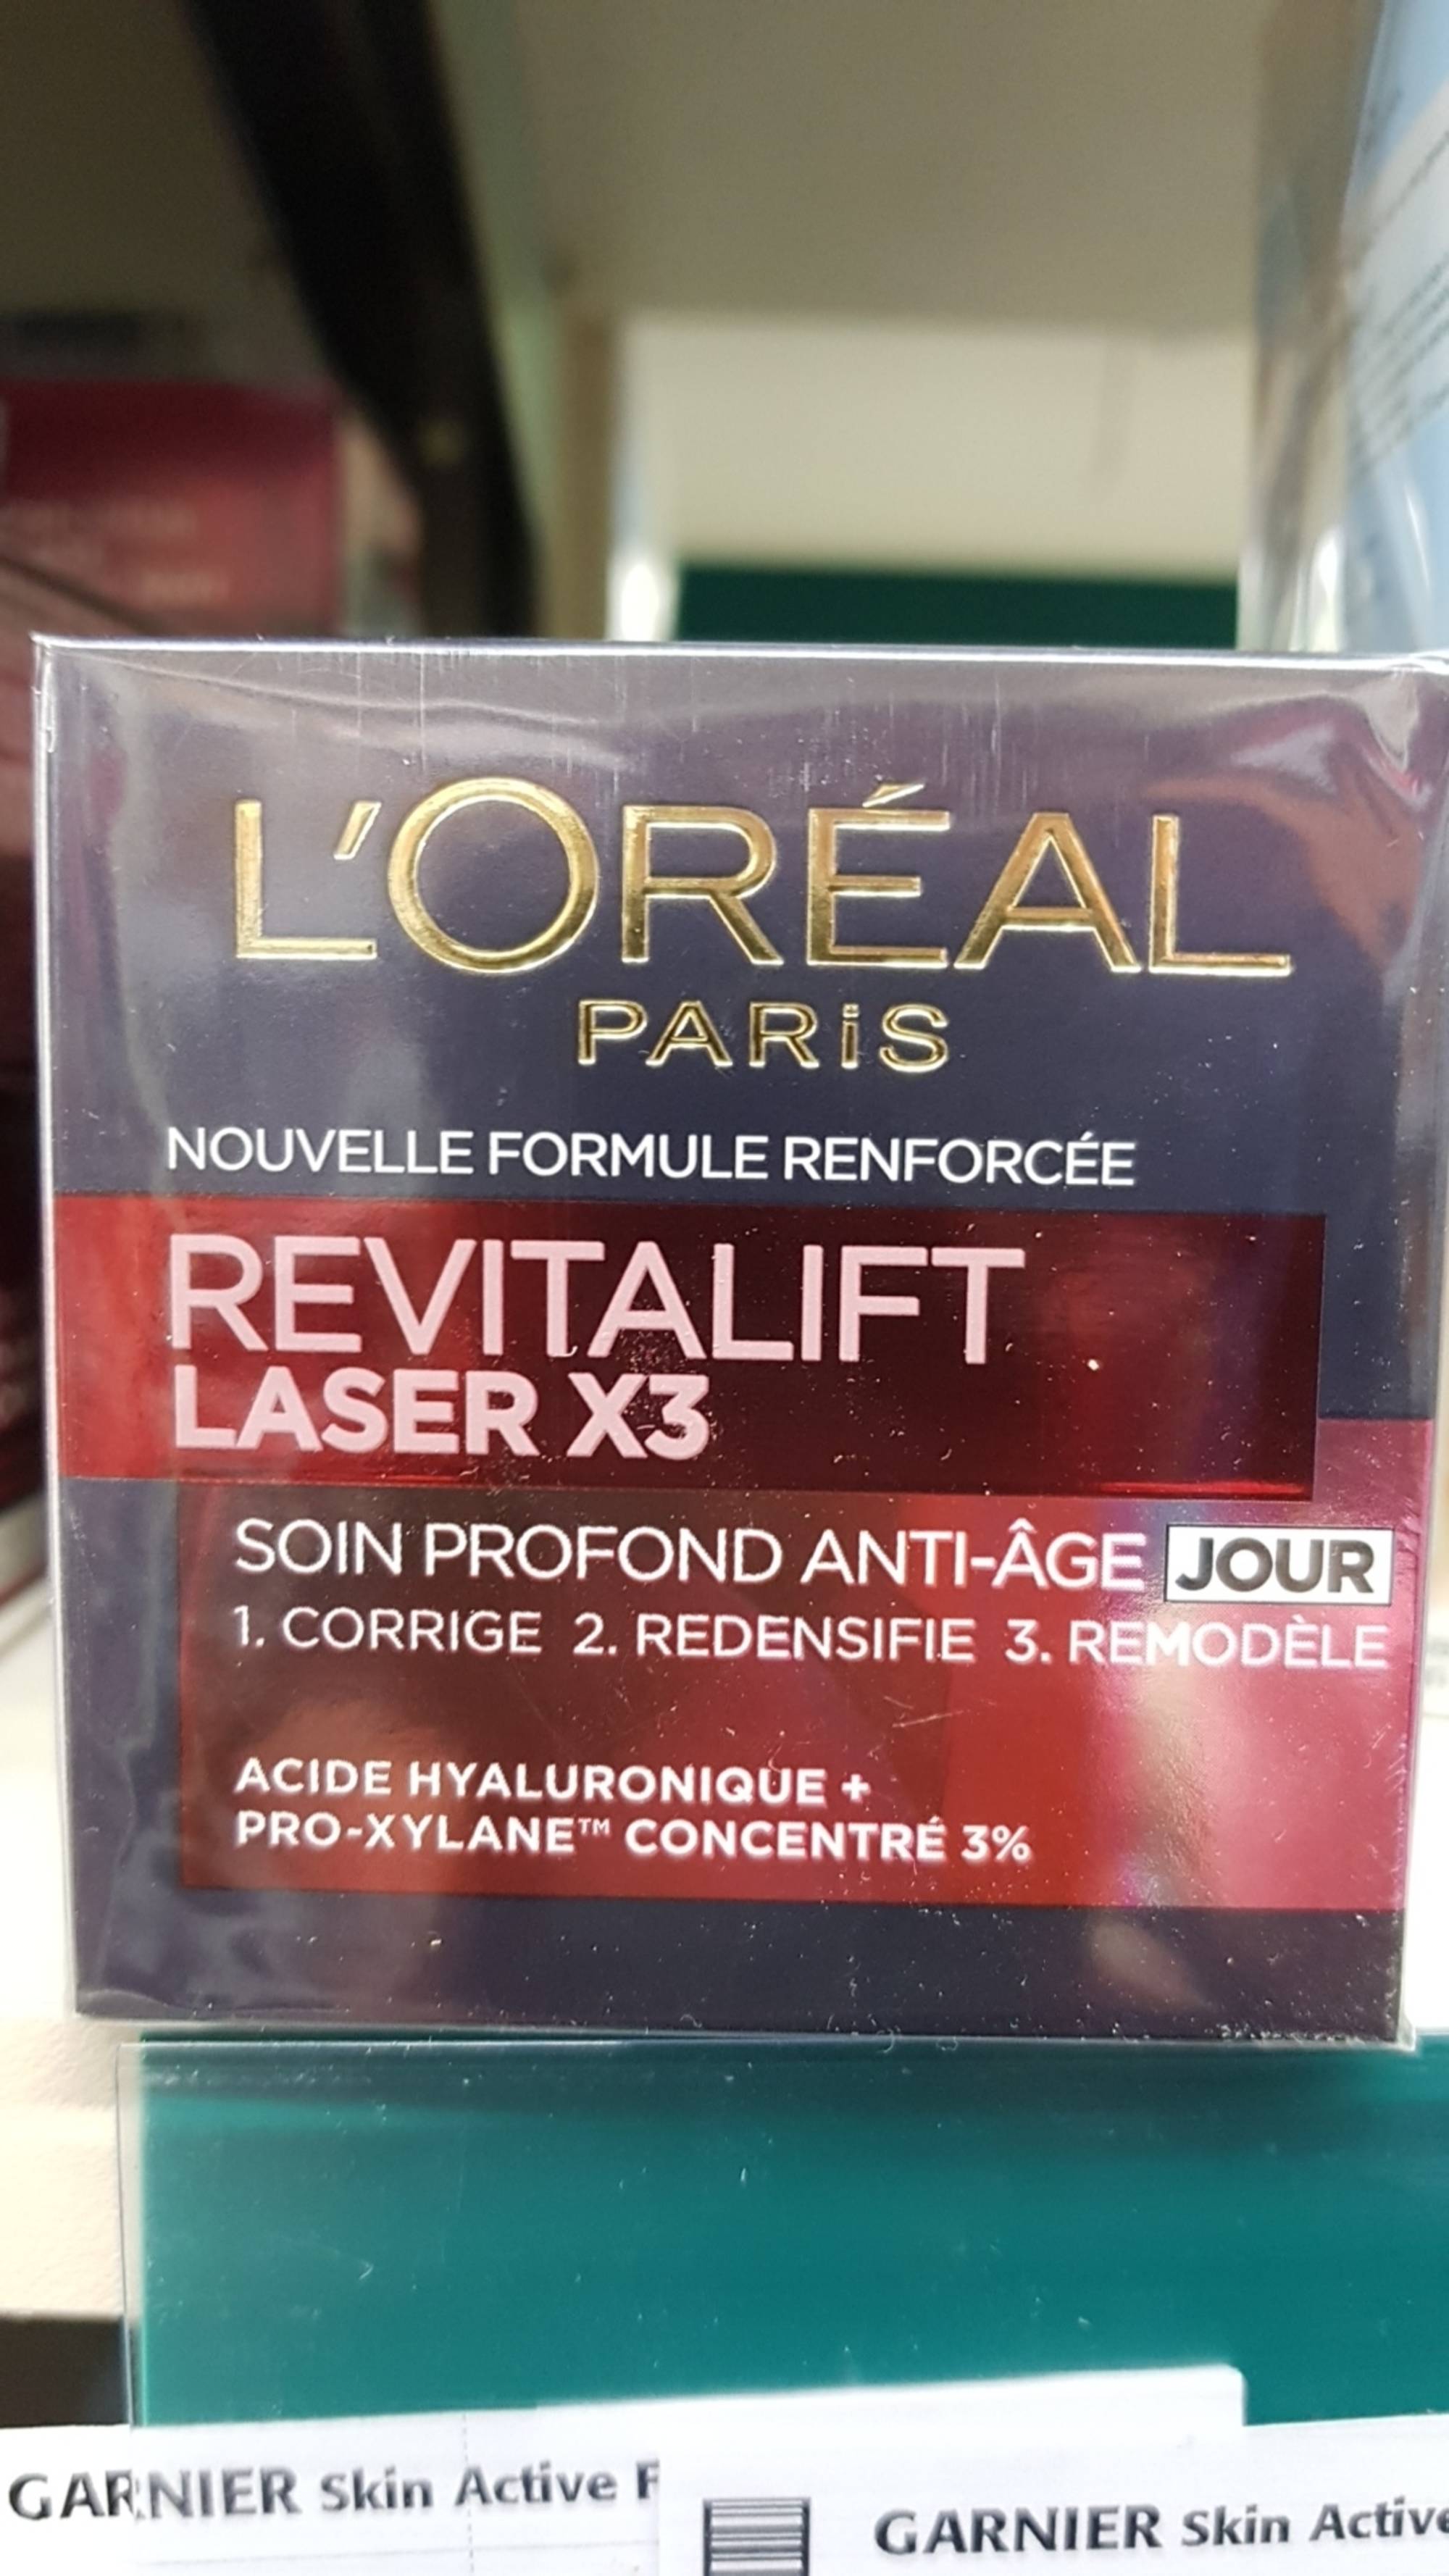 L'ORÉAL PARIS - Revitalift laser x3 - Soin profond anti-âge